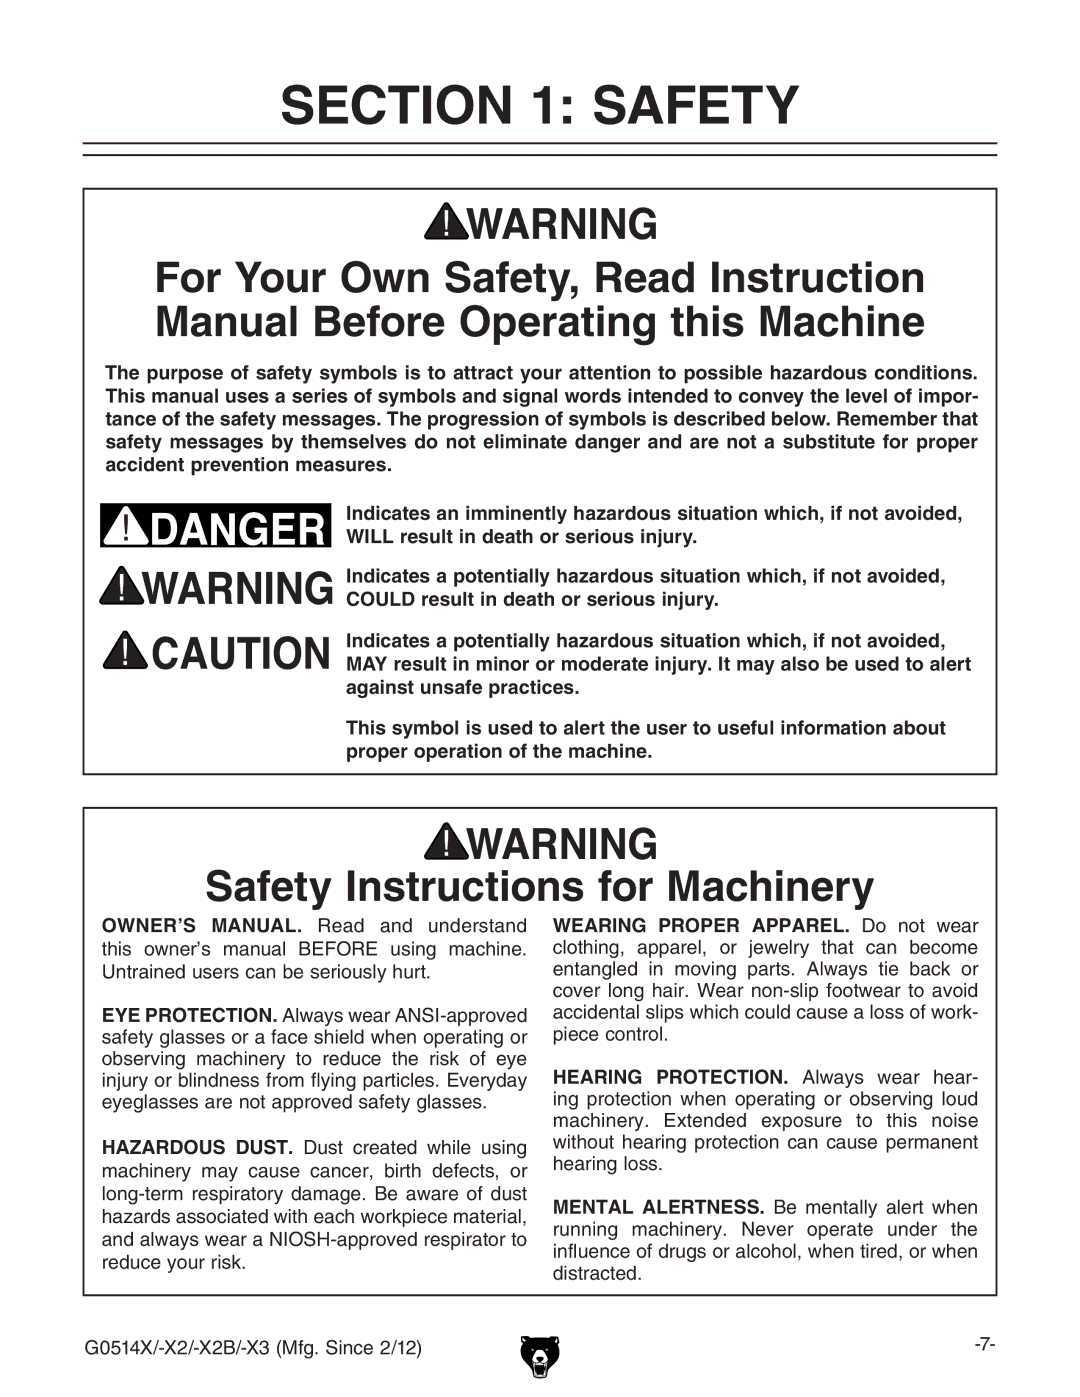 Grizzly G0514X owner manual Safety Instructions for Machinery, DWhZgkc\ bVXcZgn id gZYjXZ iZ gh` d ZnZ 